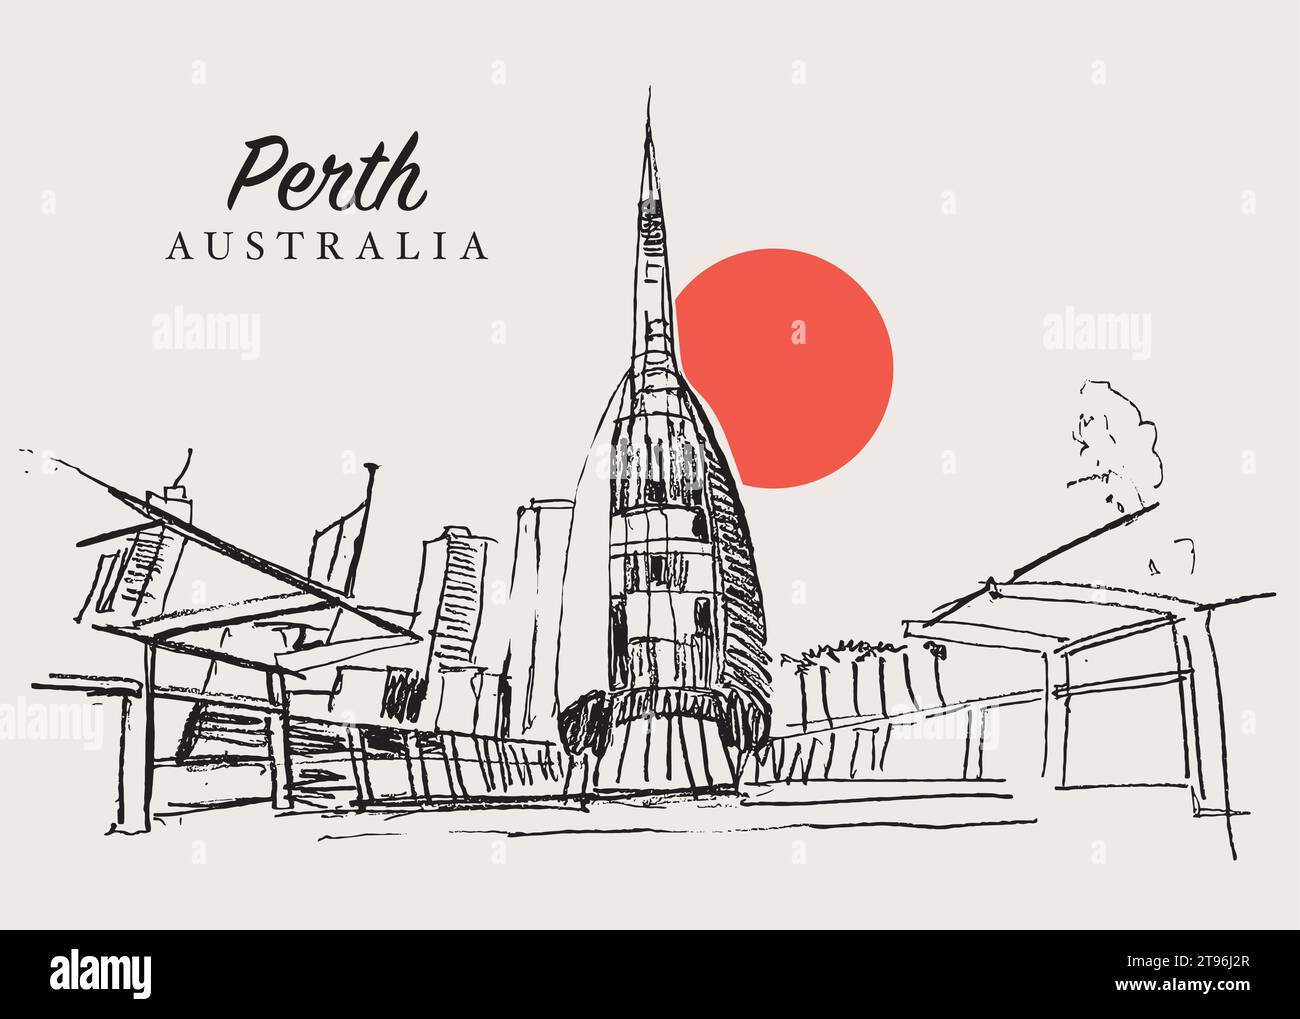 Illustration vectorielle dessinée à la main des Swan Bells, un clocher moderne à Perth, Australie occidentale. Illustration de Vecteur